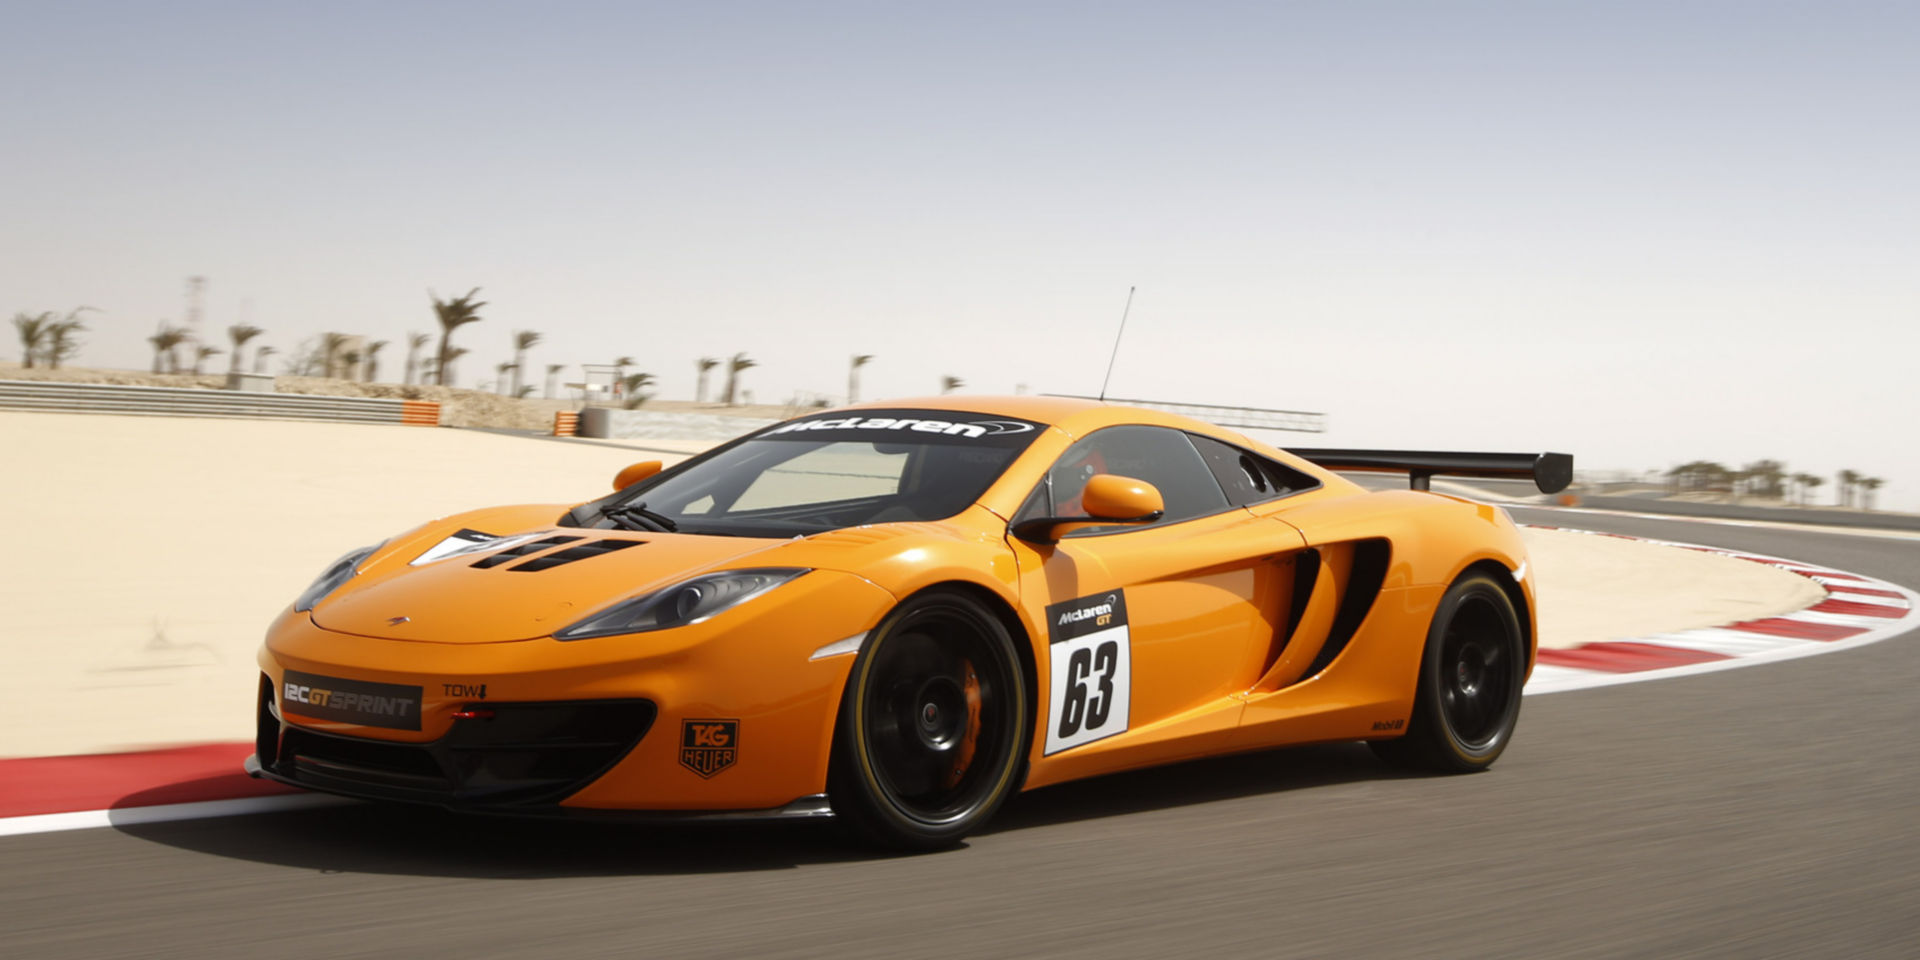  McLaren Customer Racing Models